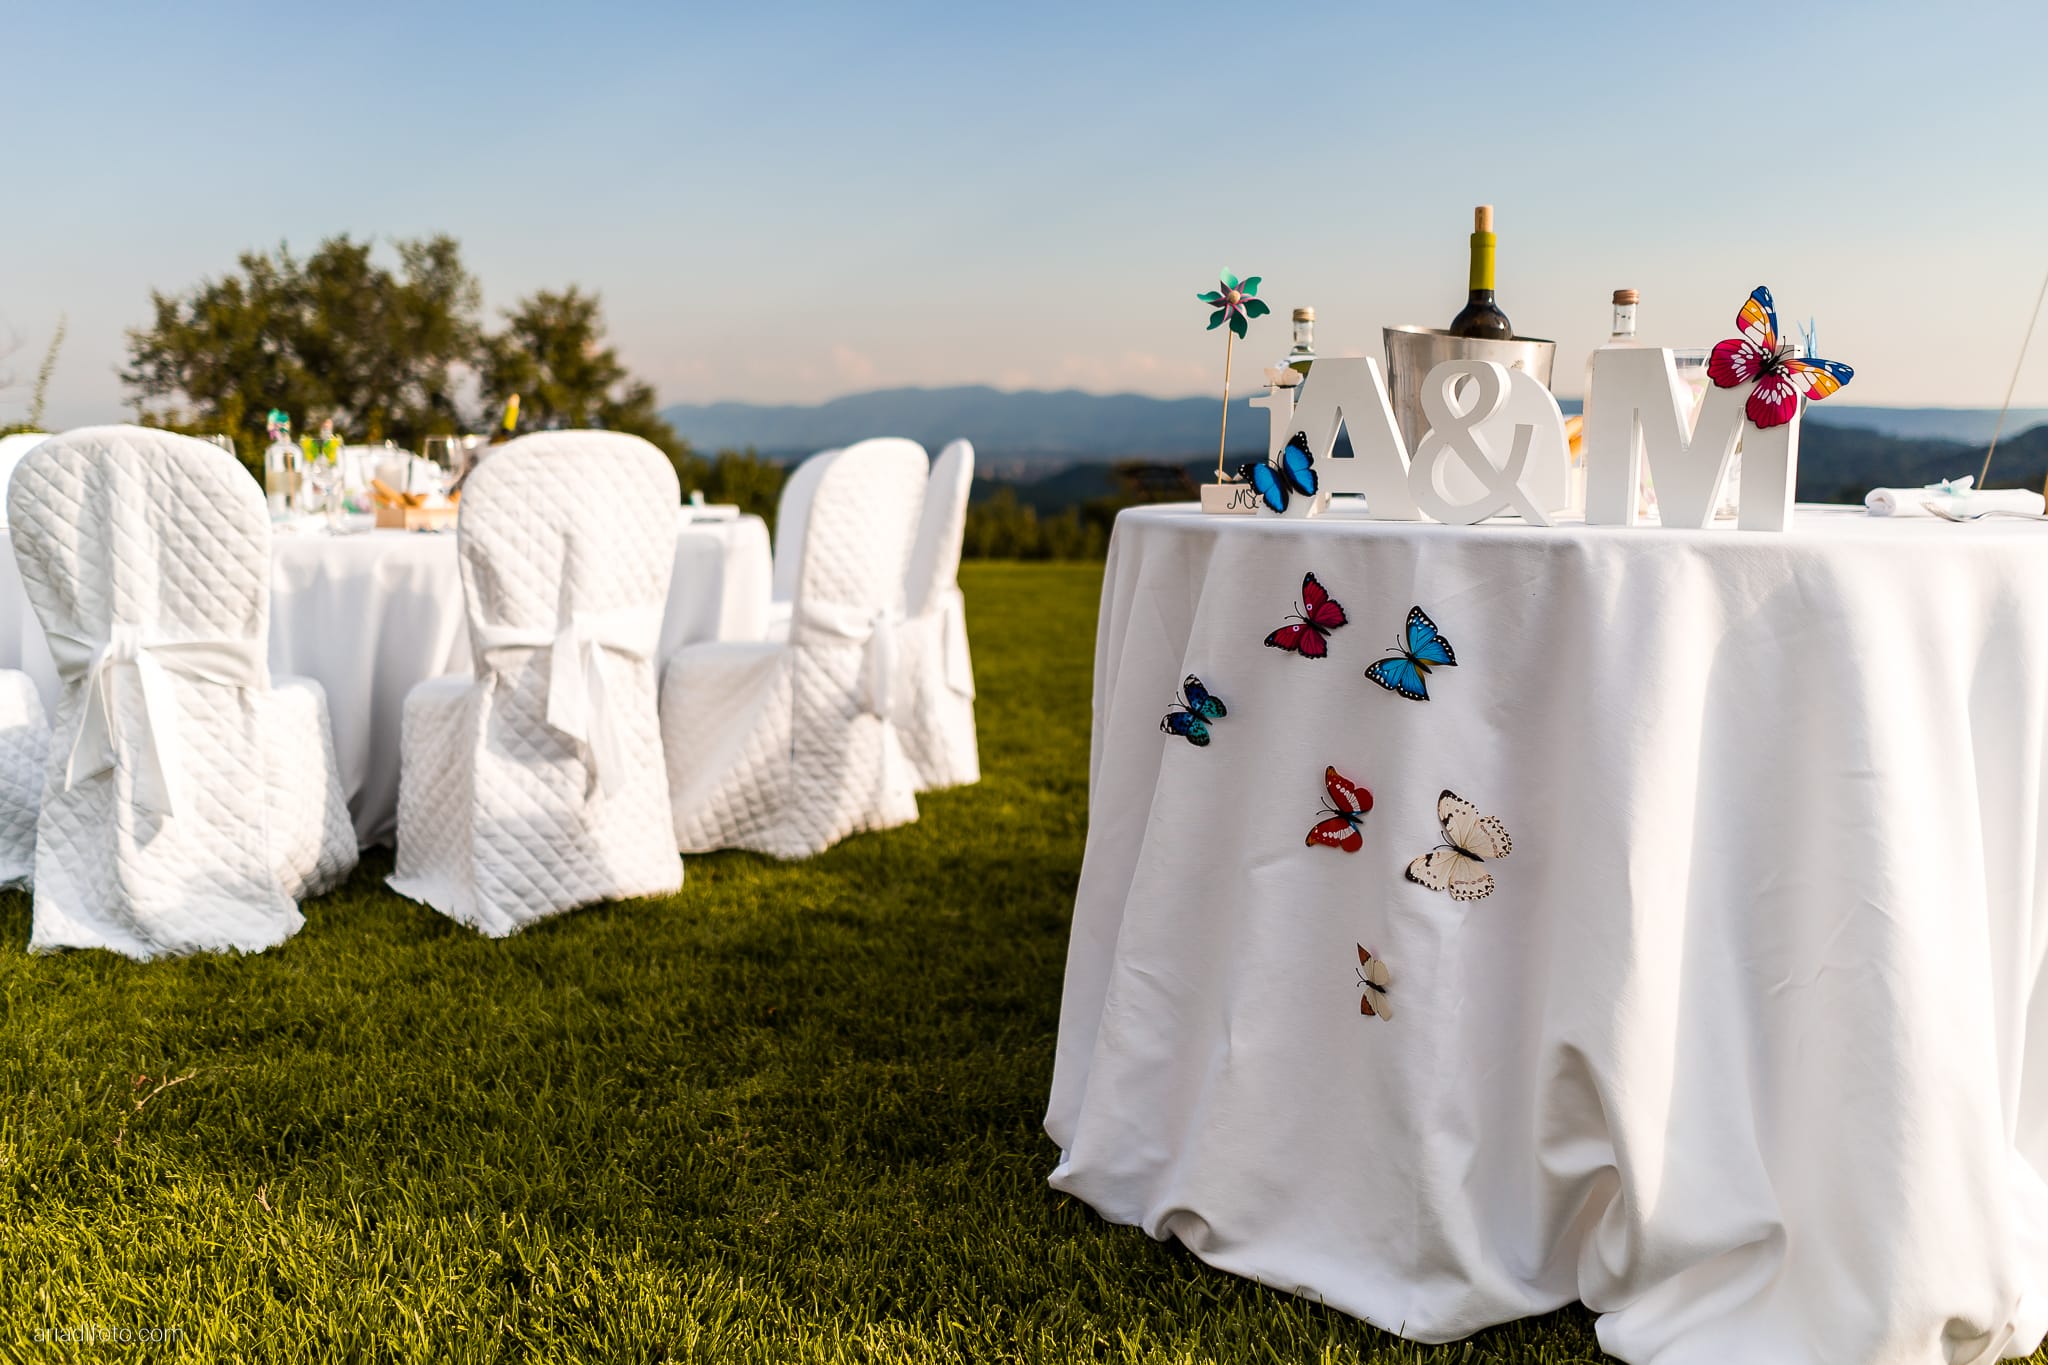 Marianna Andrea Matrimonio da sogno sotto le stelle allestimenti decorazioni farfalle colori tavoli all'aperto